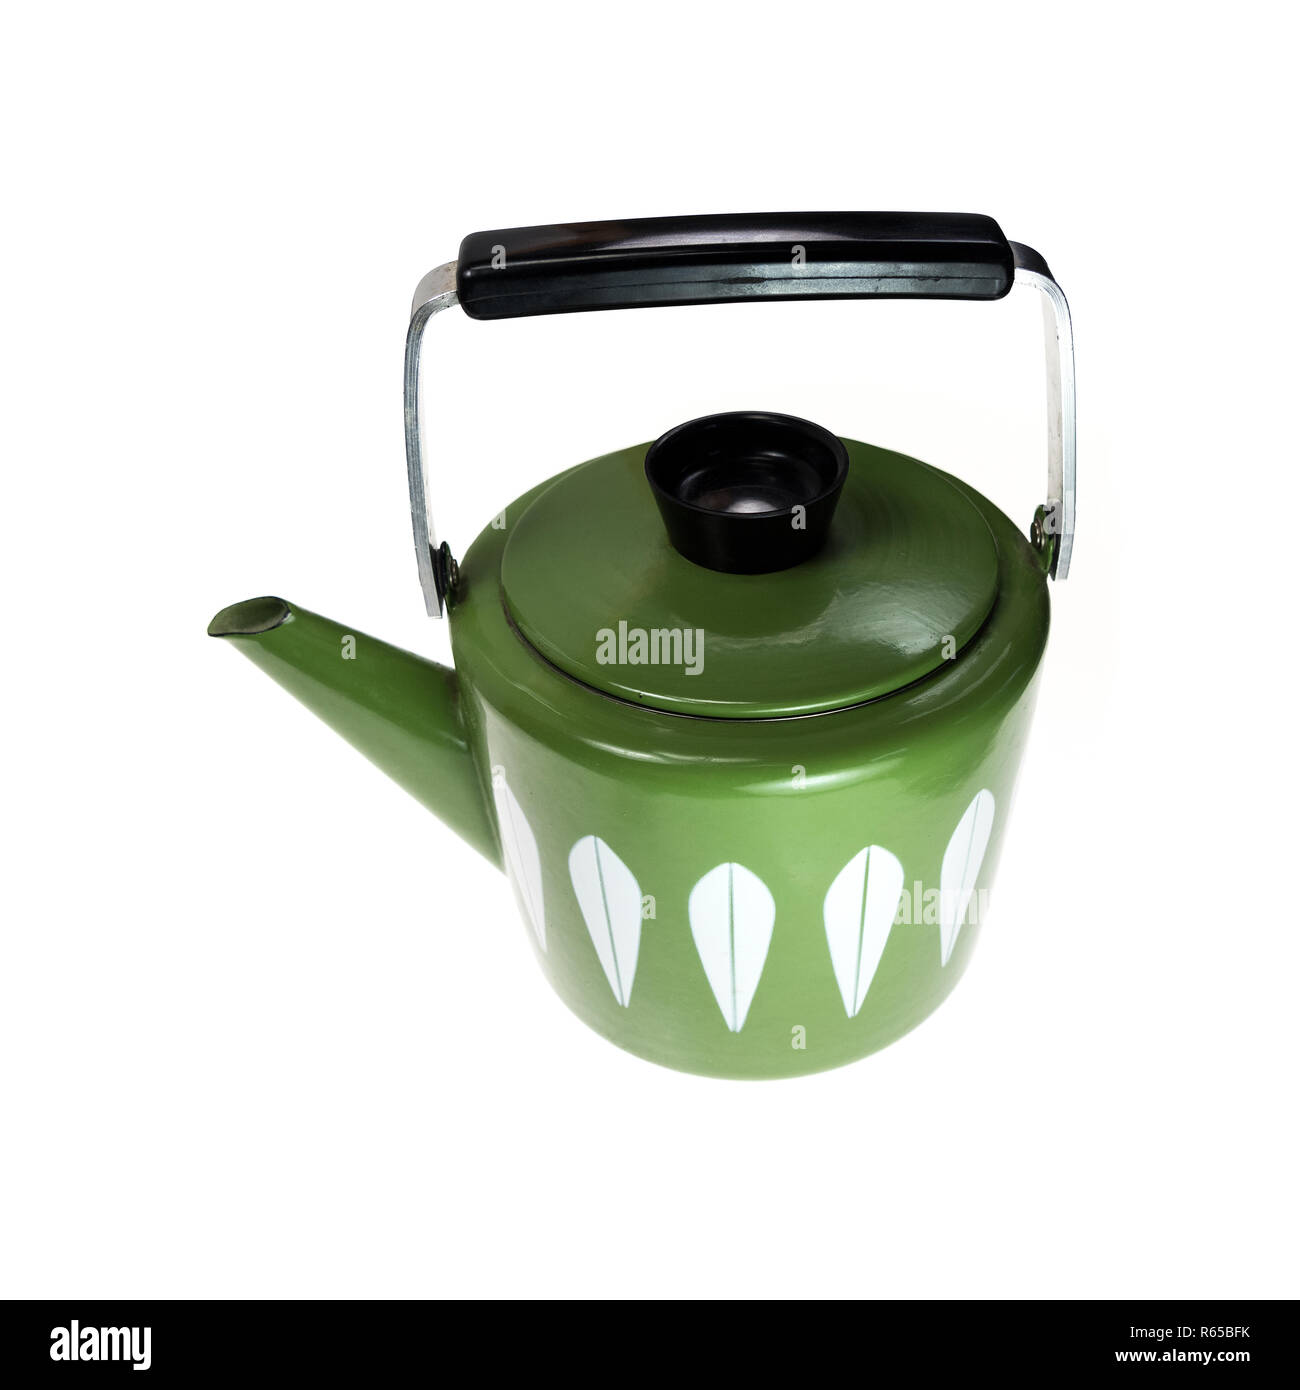 https://c8.alamy.com/comp/R65BFK/green-and-white-cathrineholm-tea-kettle-on-white-background-R65BFK.jpg